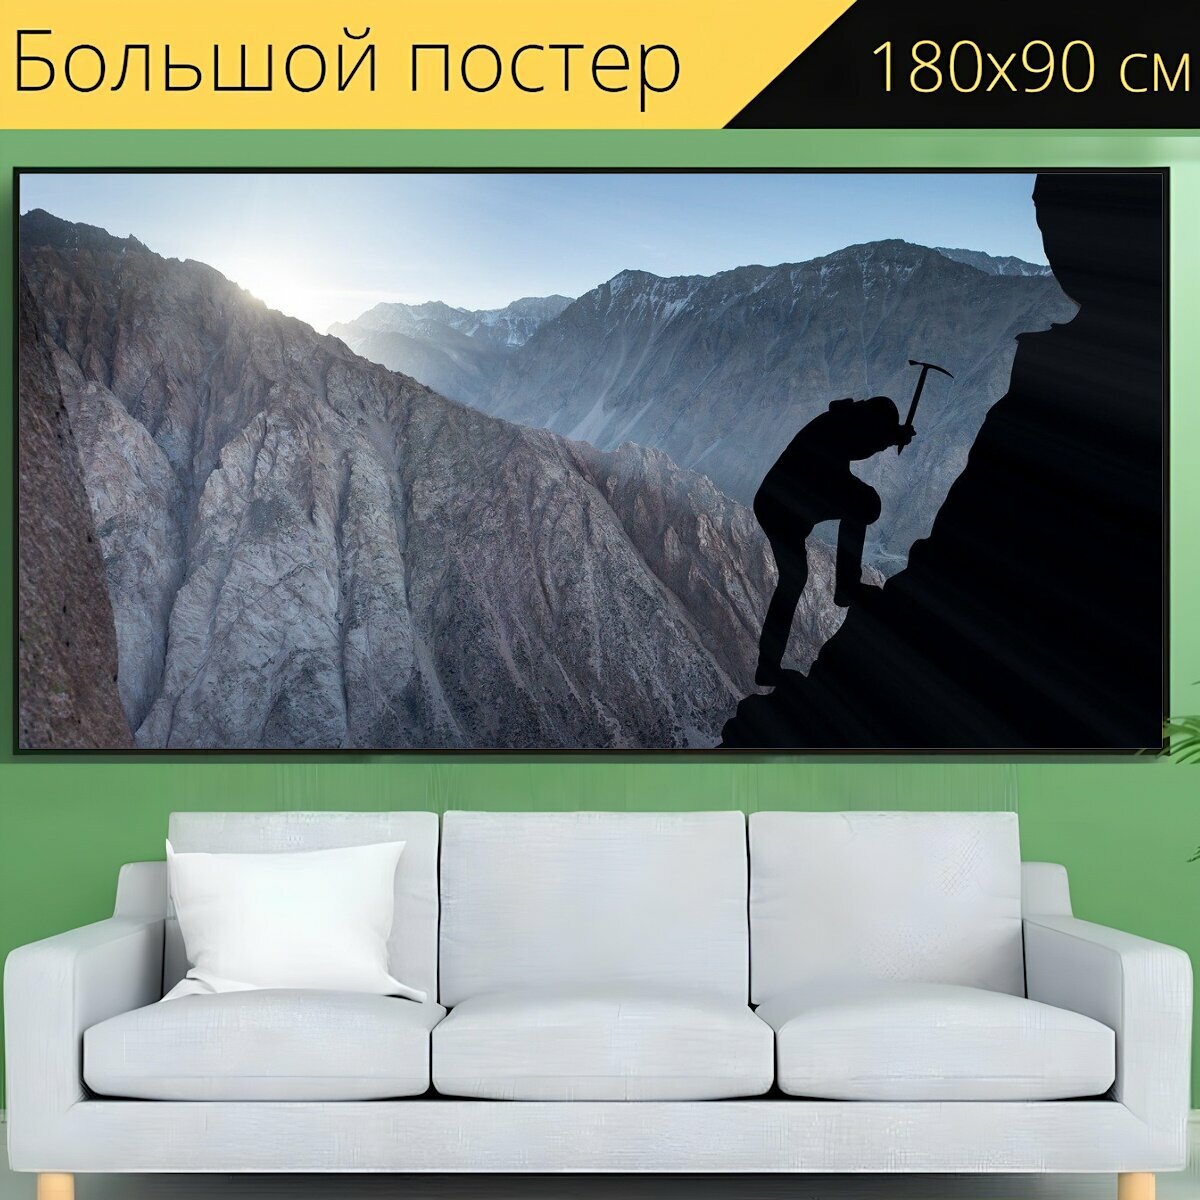 Большой постер "Скалолазание, успех, гора" 180 x 90 см. для интерьера